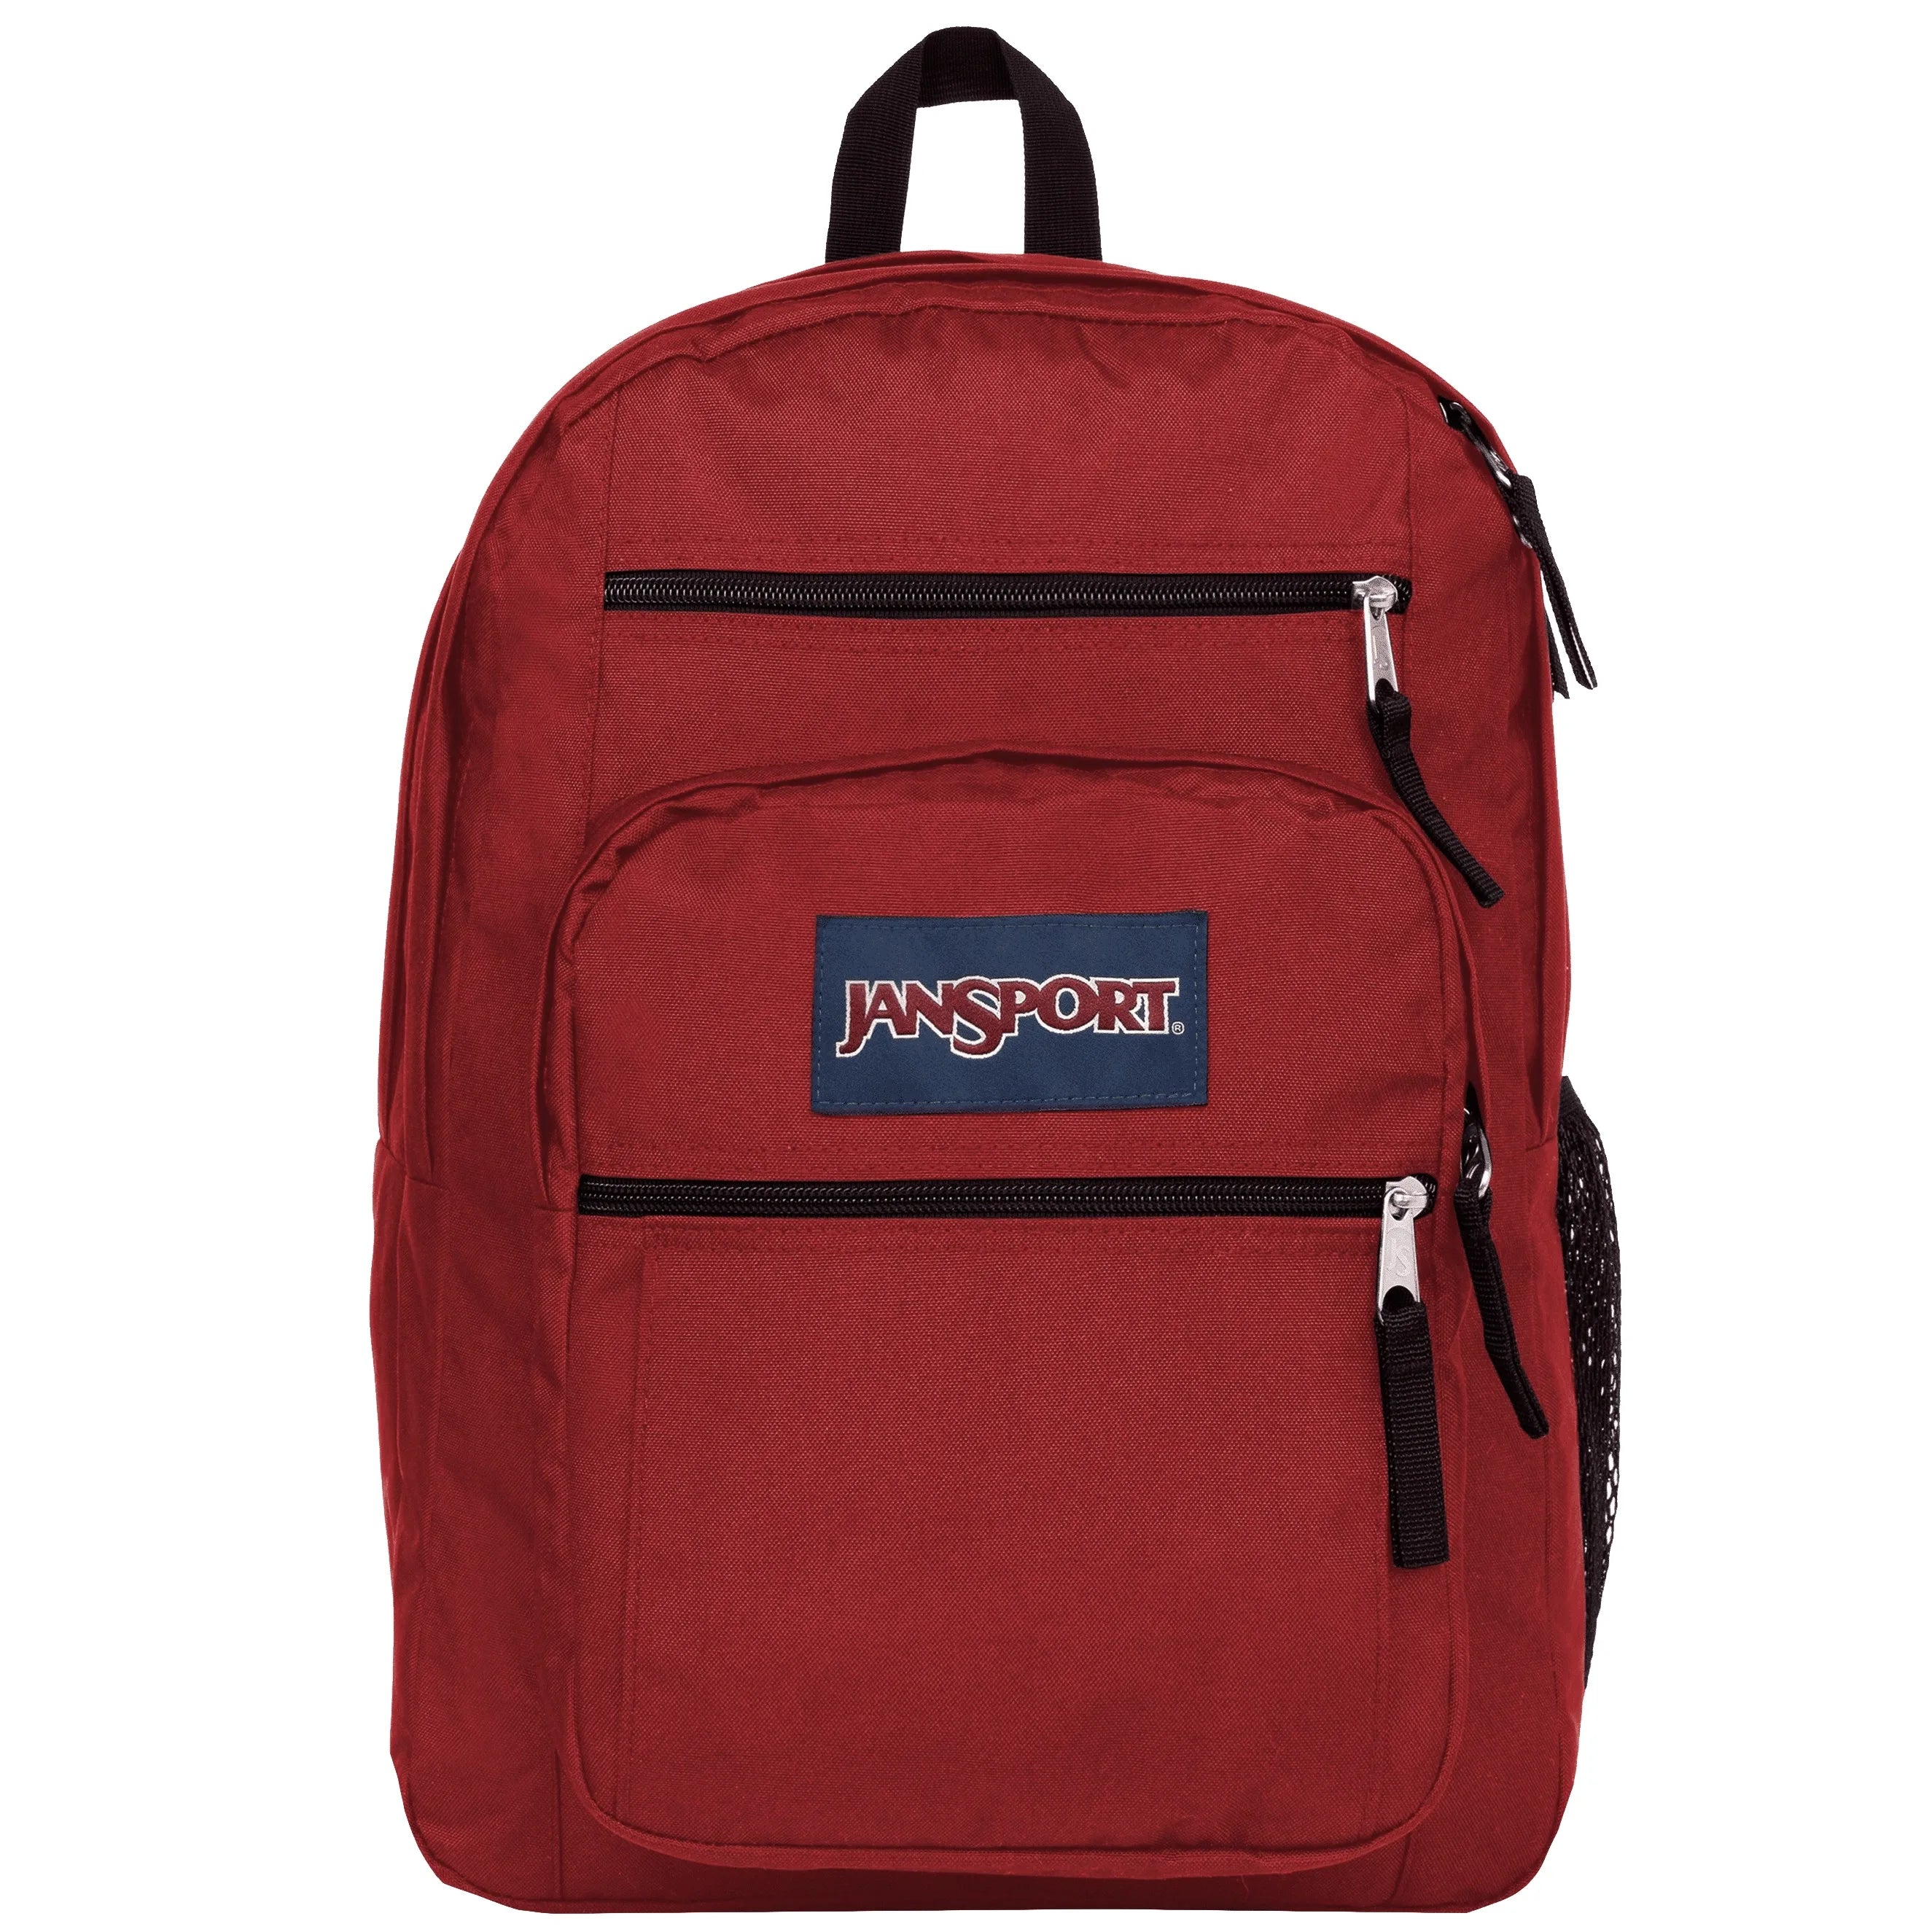 Jansport Big Student Backpack 43 cm - Russet Red